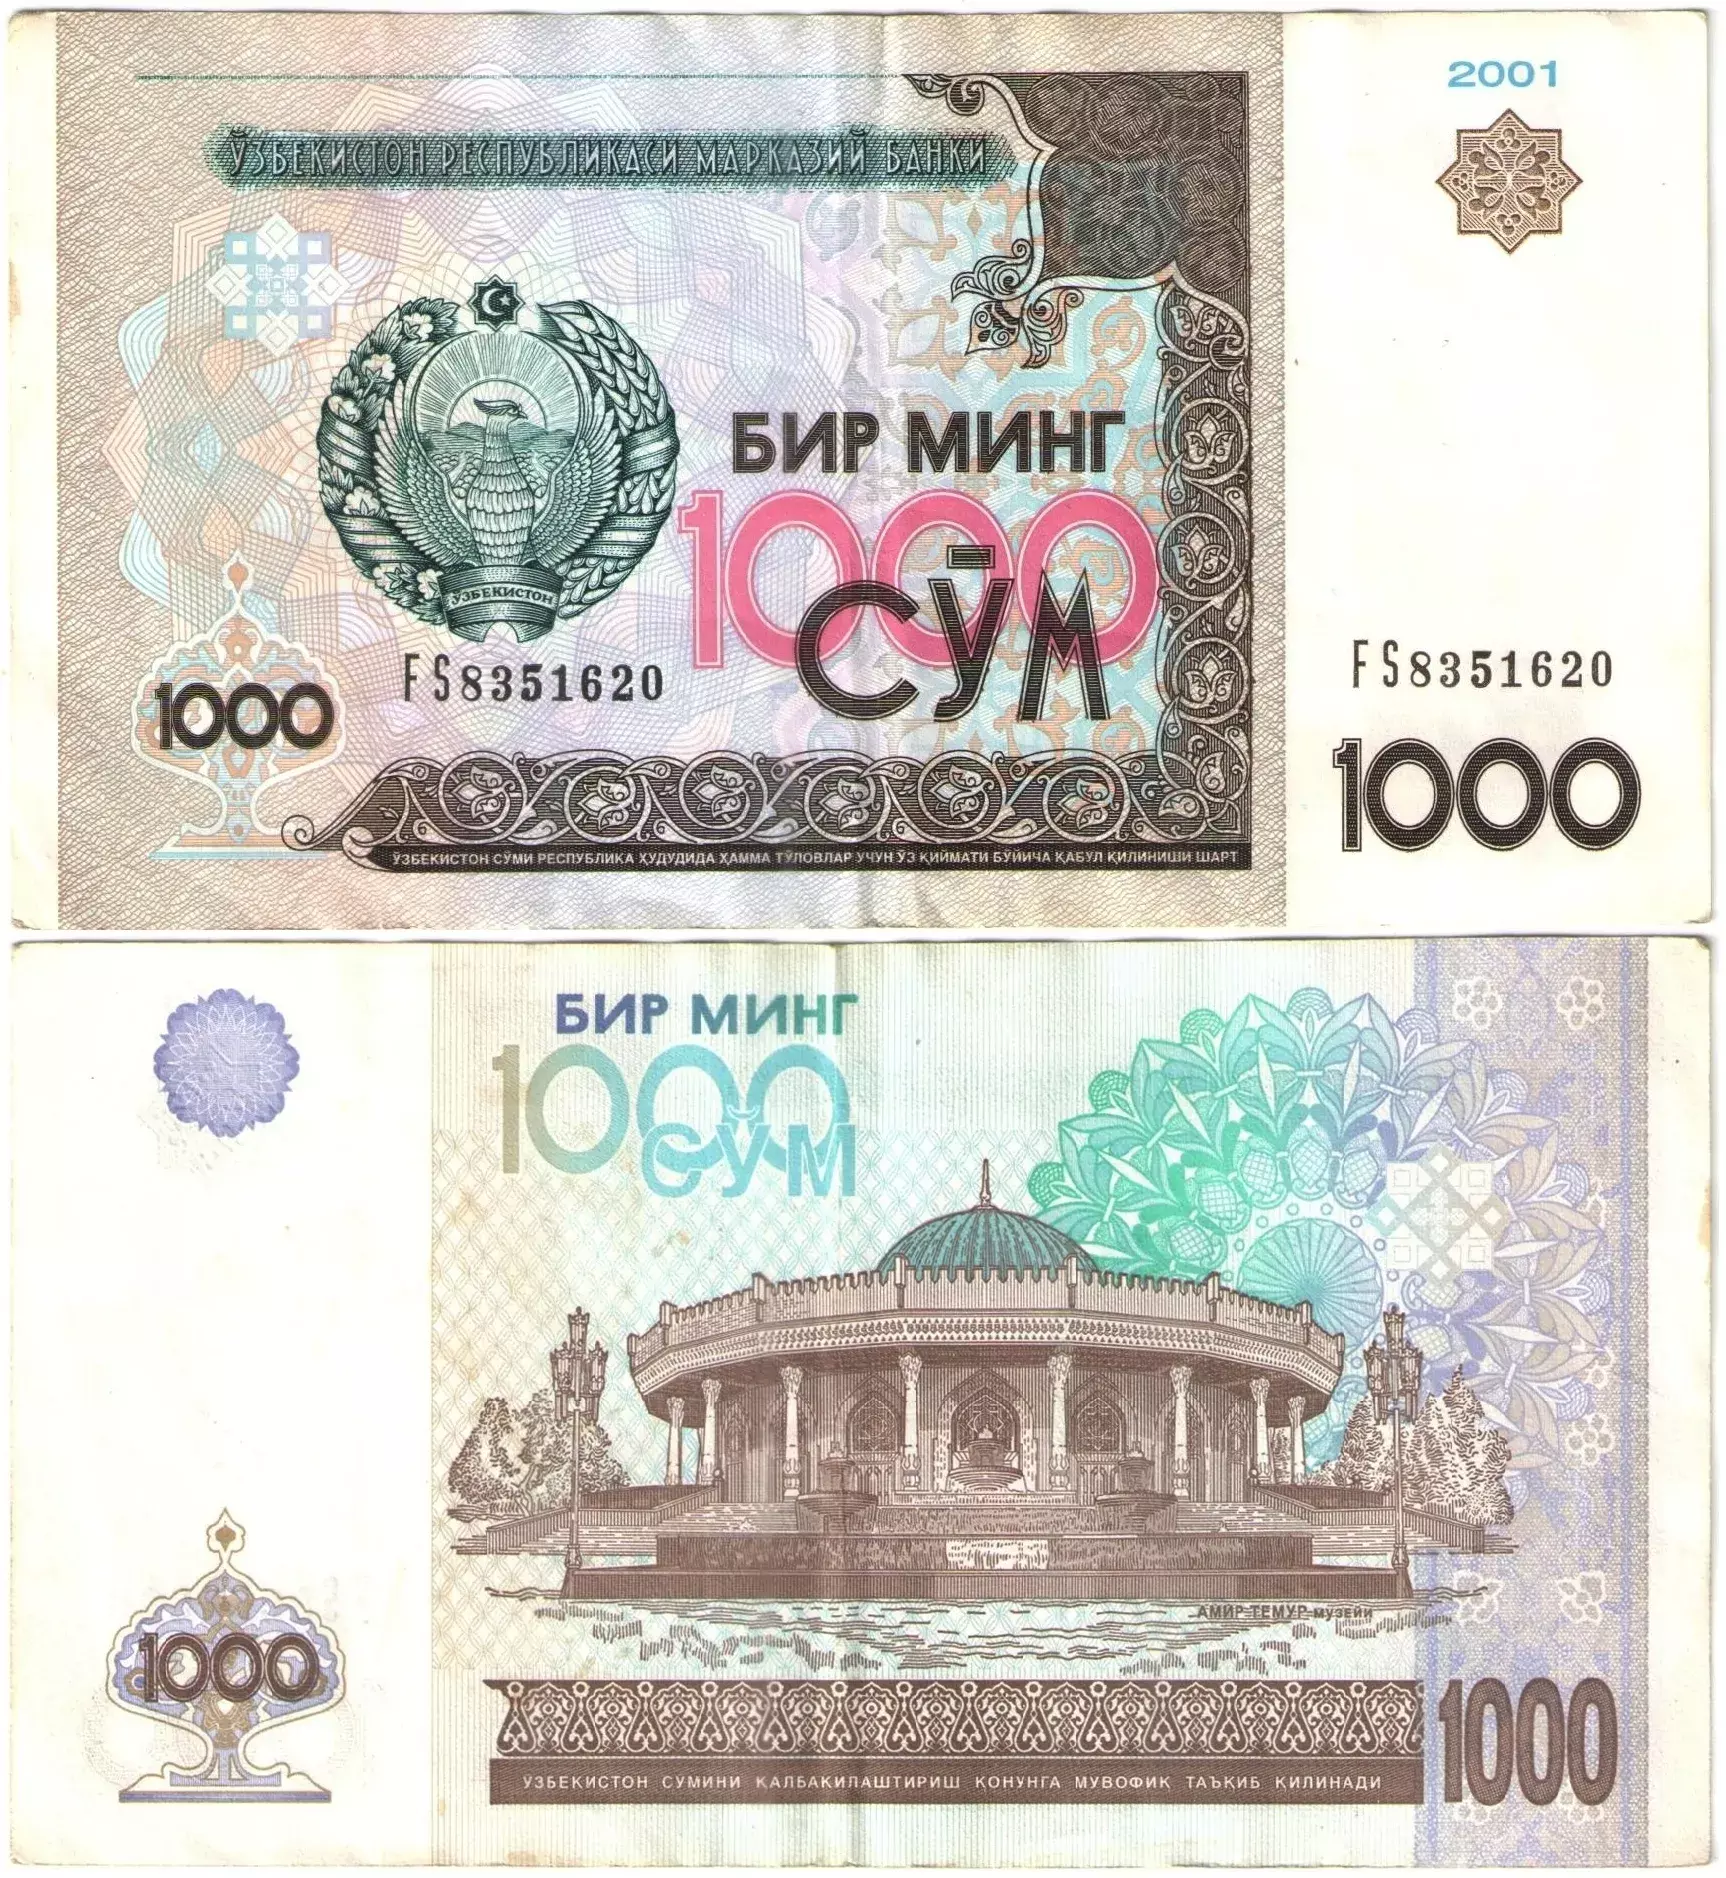 Продажа сум. Купюры Узбекистана. 1 000 Сум. Купюра 1000 2001 года. 1000 Сум в рублях.